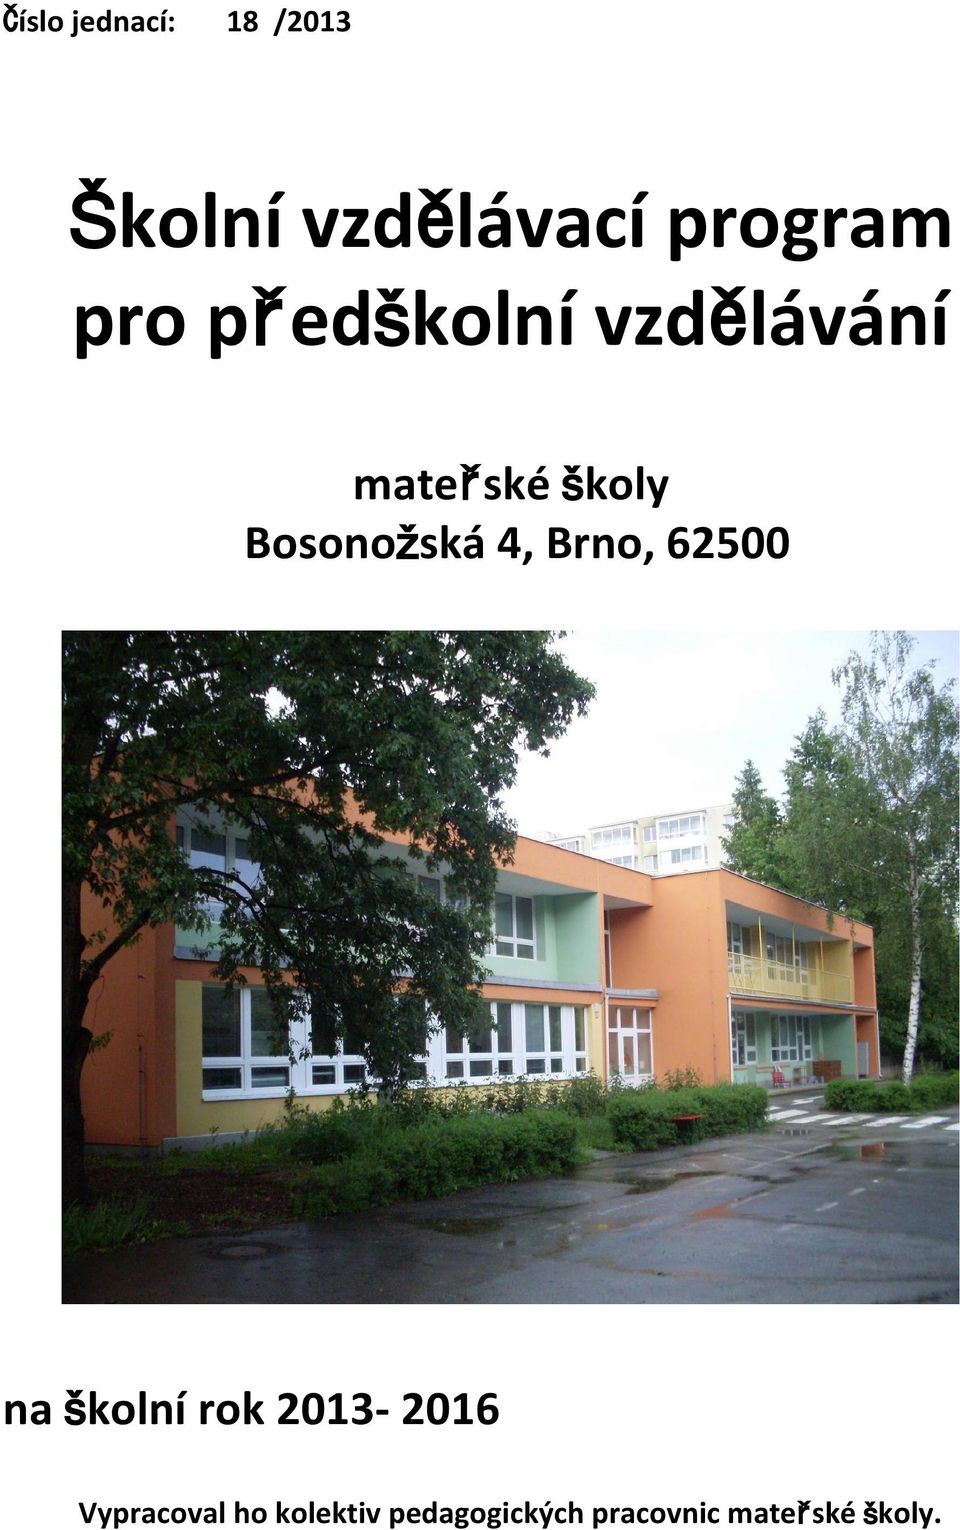 Bosonožská 4, Brno, 62500 na školní rok 2013-2016